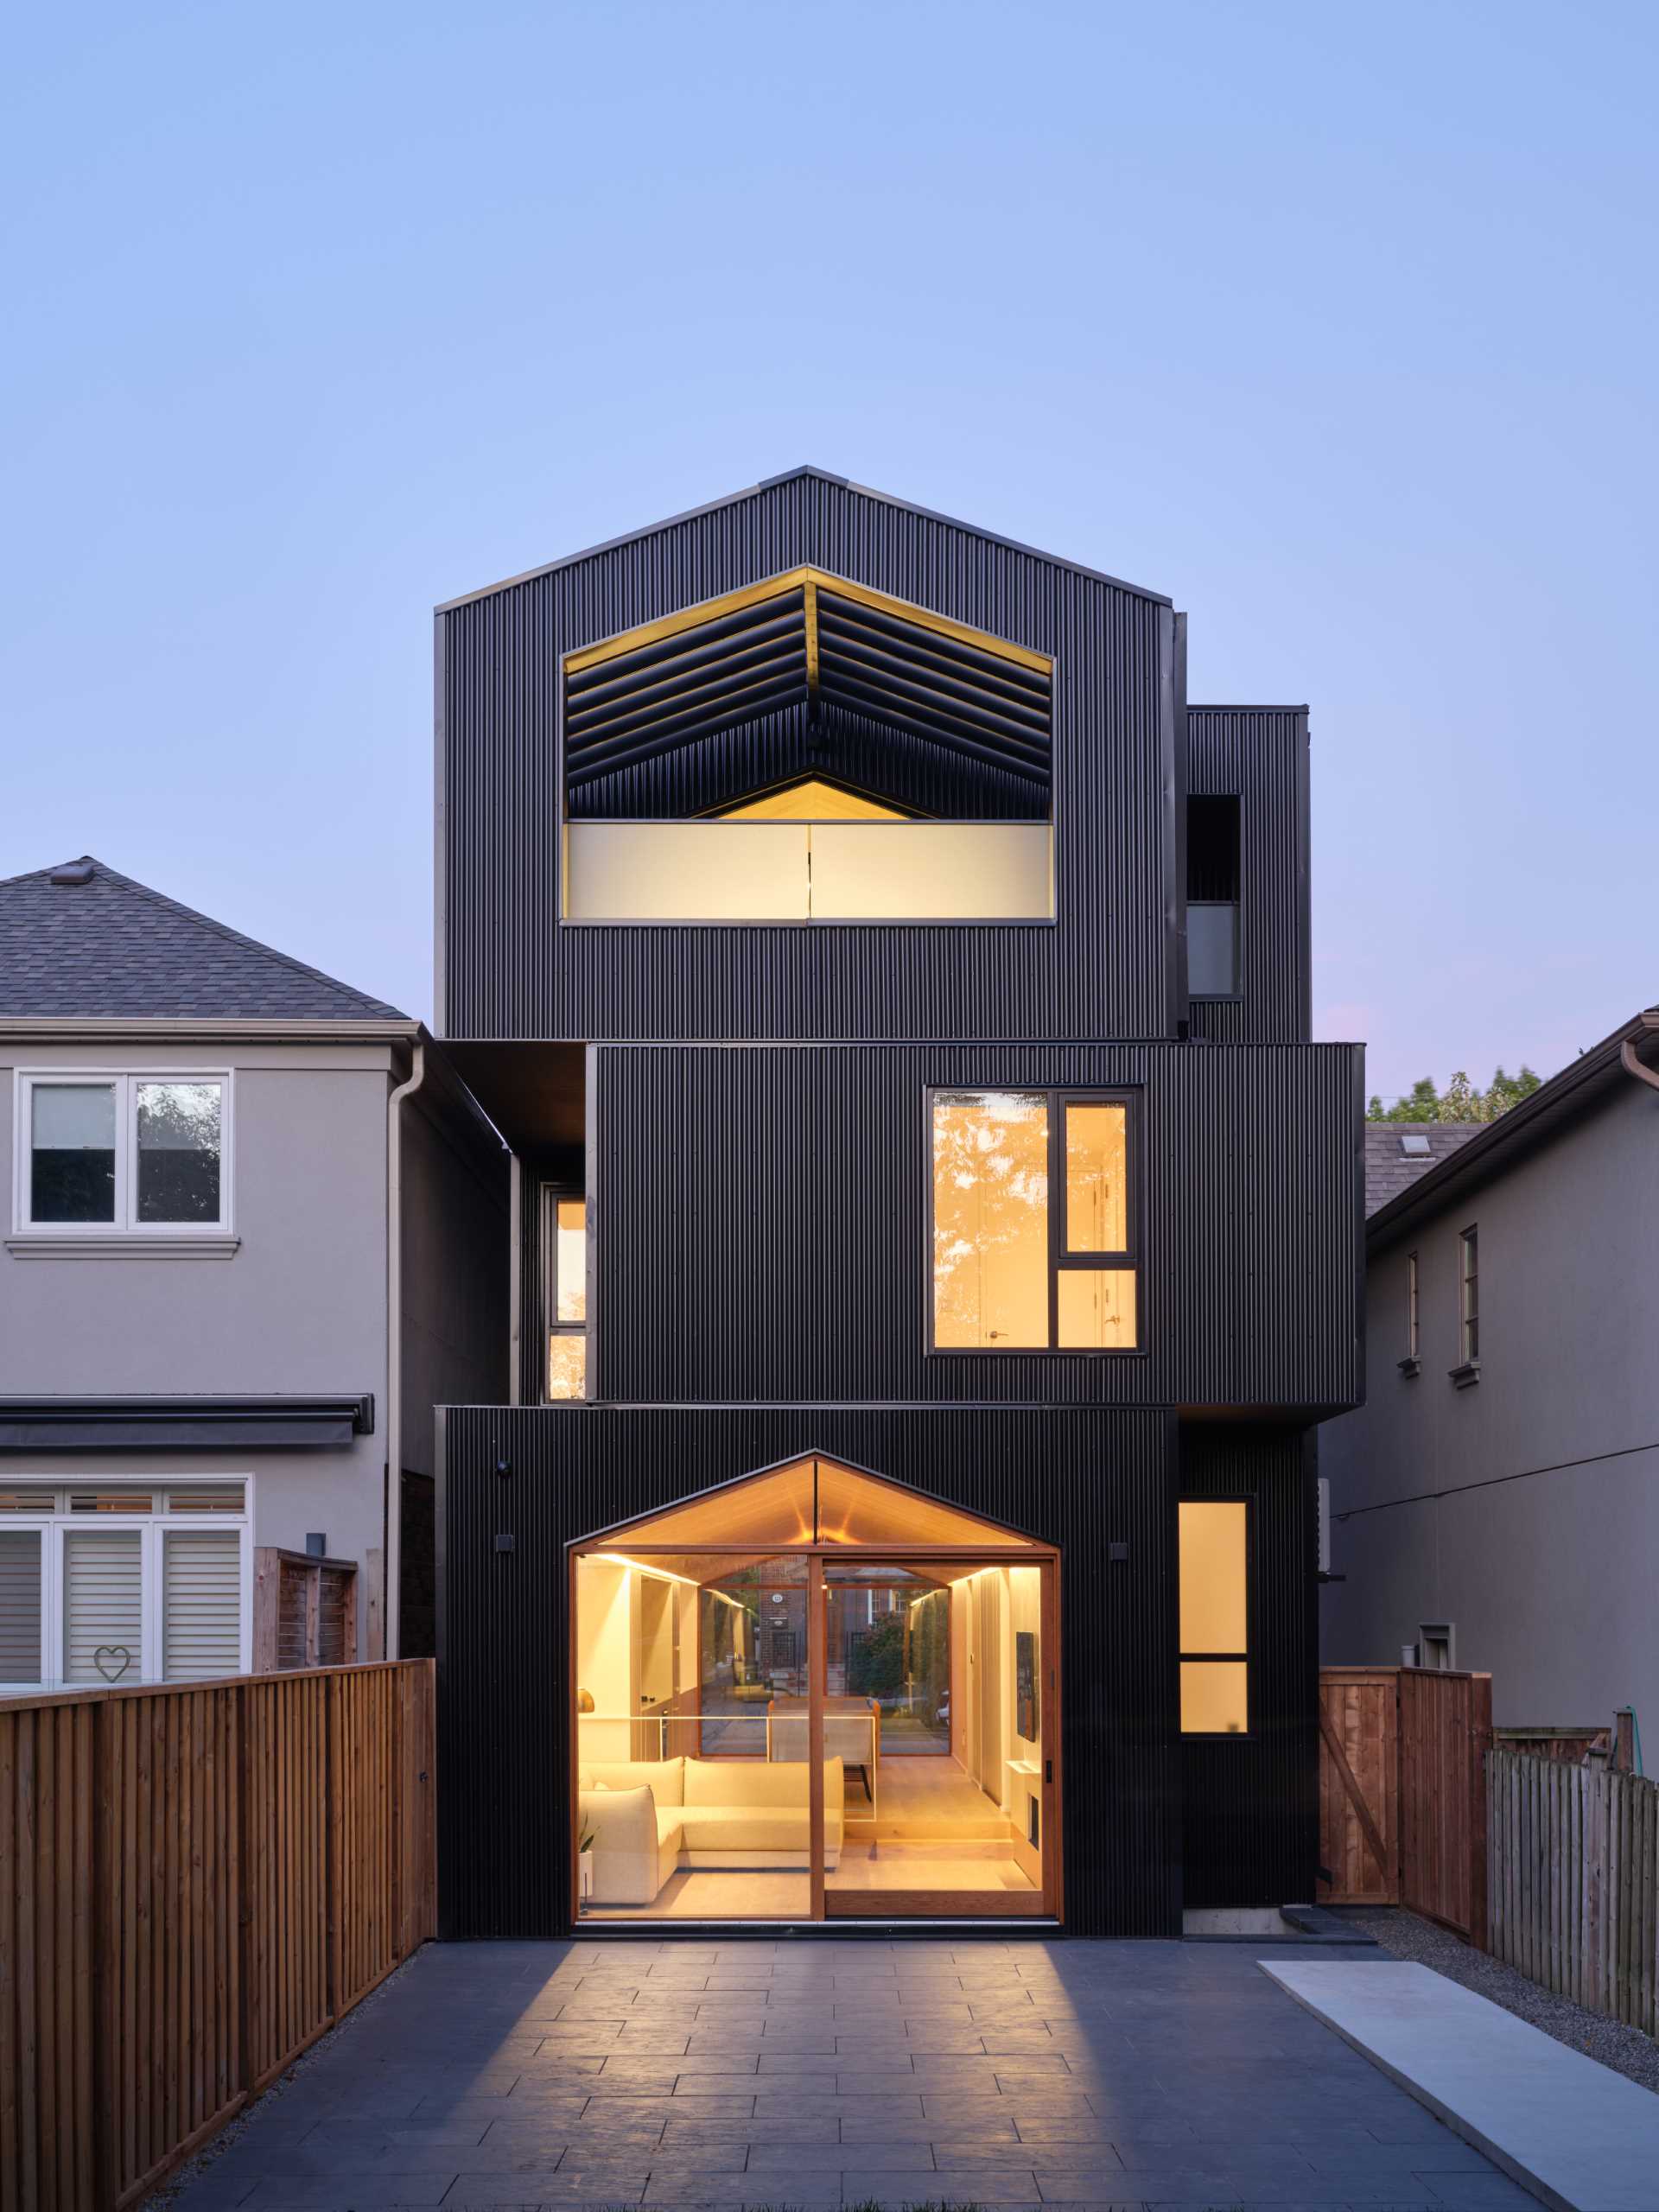 Locuința are un acoperiș în două frontoane și apare ca o serie de cutii negre stivuite, cu diferite niveluri care definesc diferitele zone ale casei.